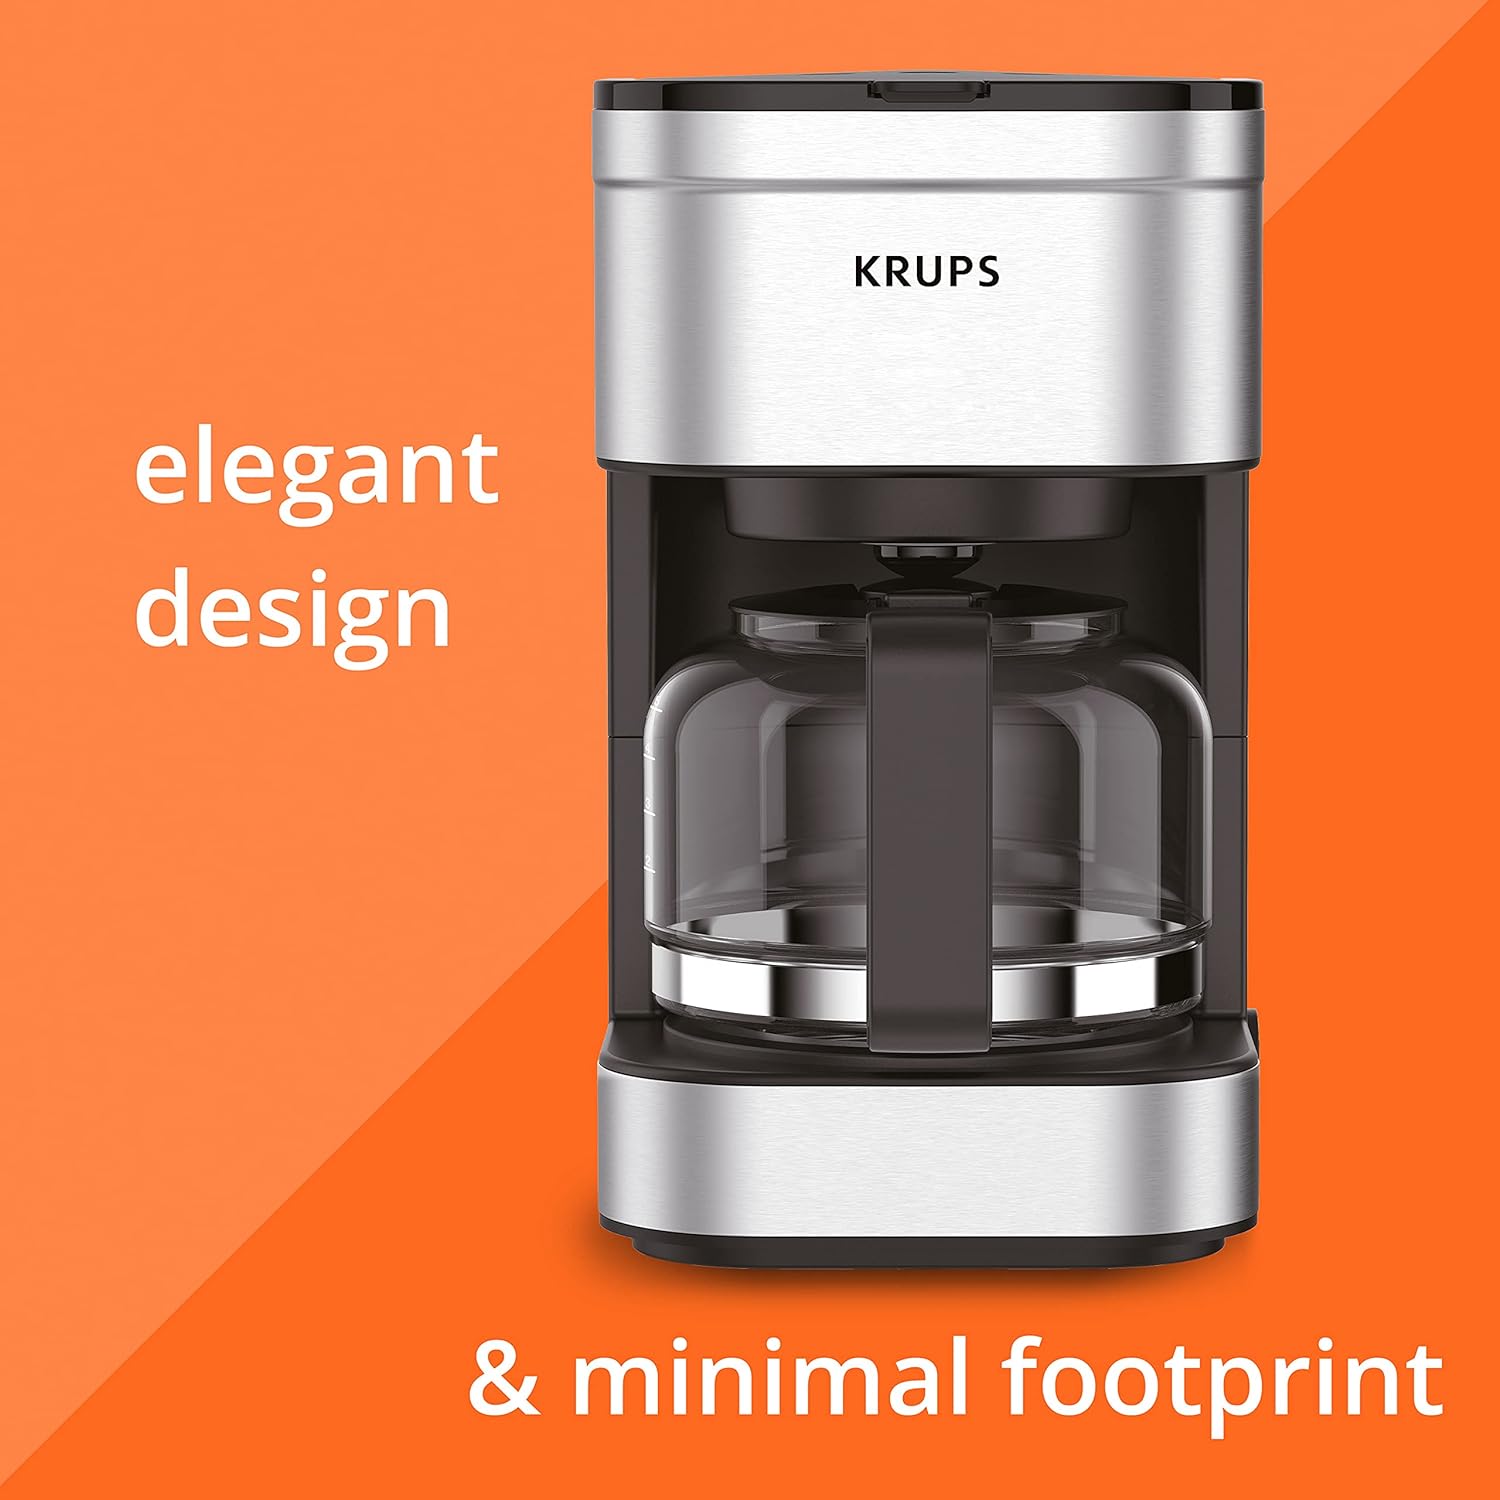 قهوه ساز قطره ای فیلتر فشرده 5 فنجان کروپس مدل KRUPS Simply - ارسال 20 الی 25 روز کاری